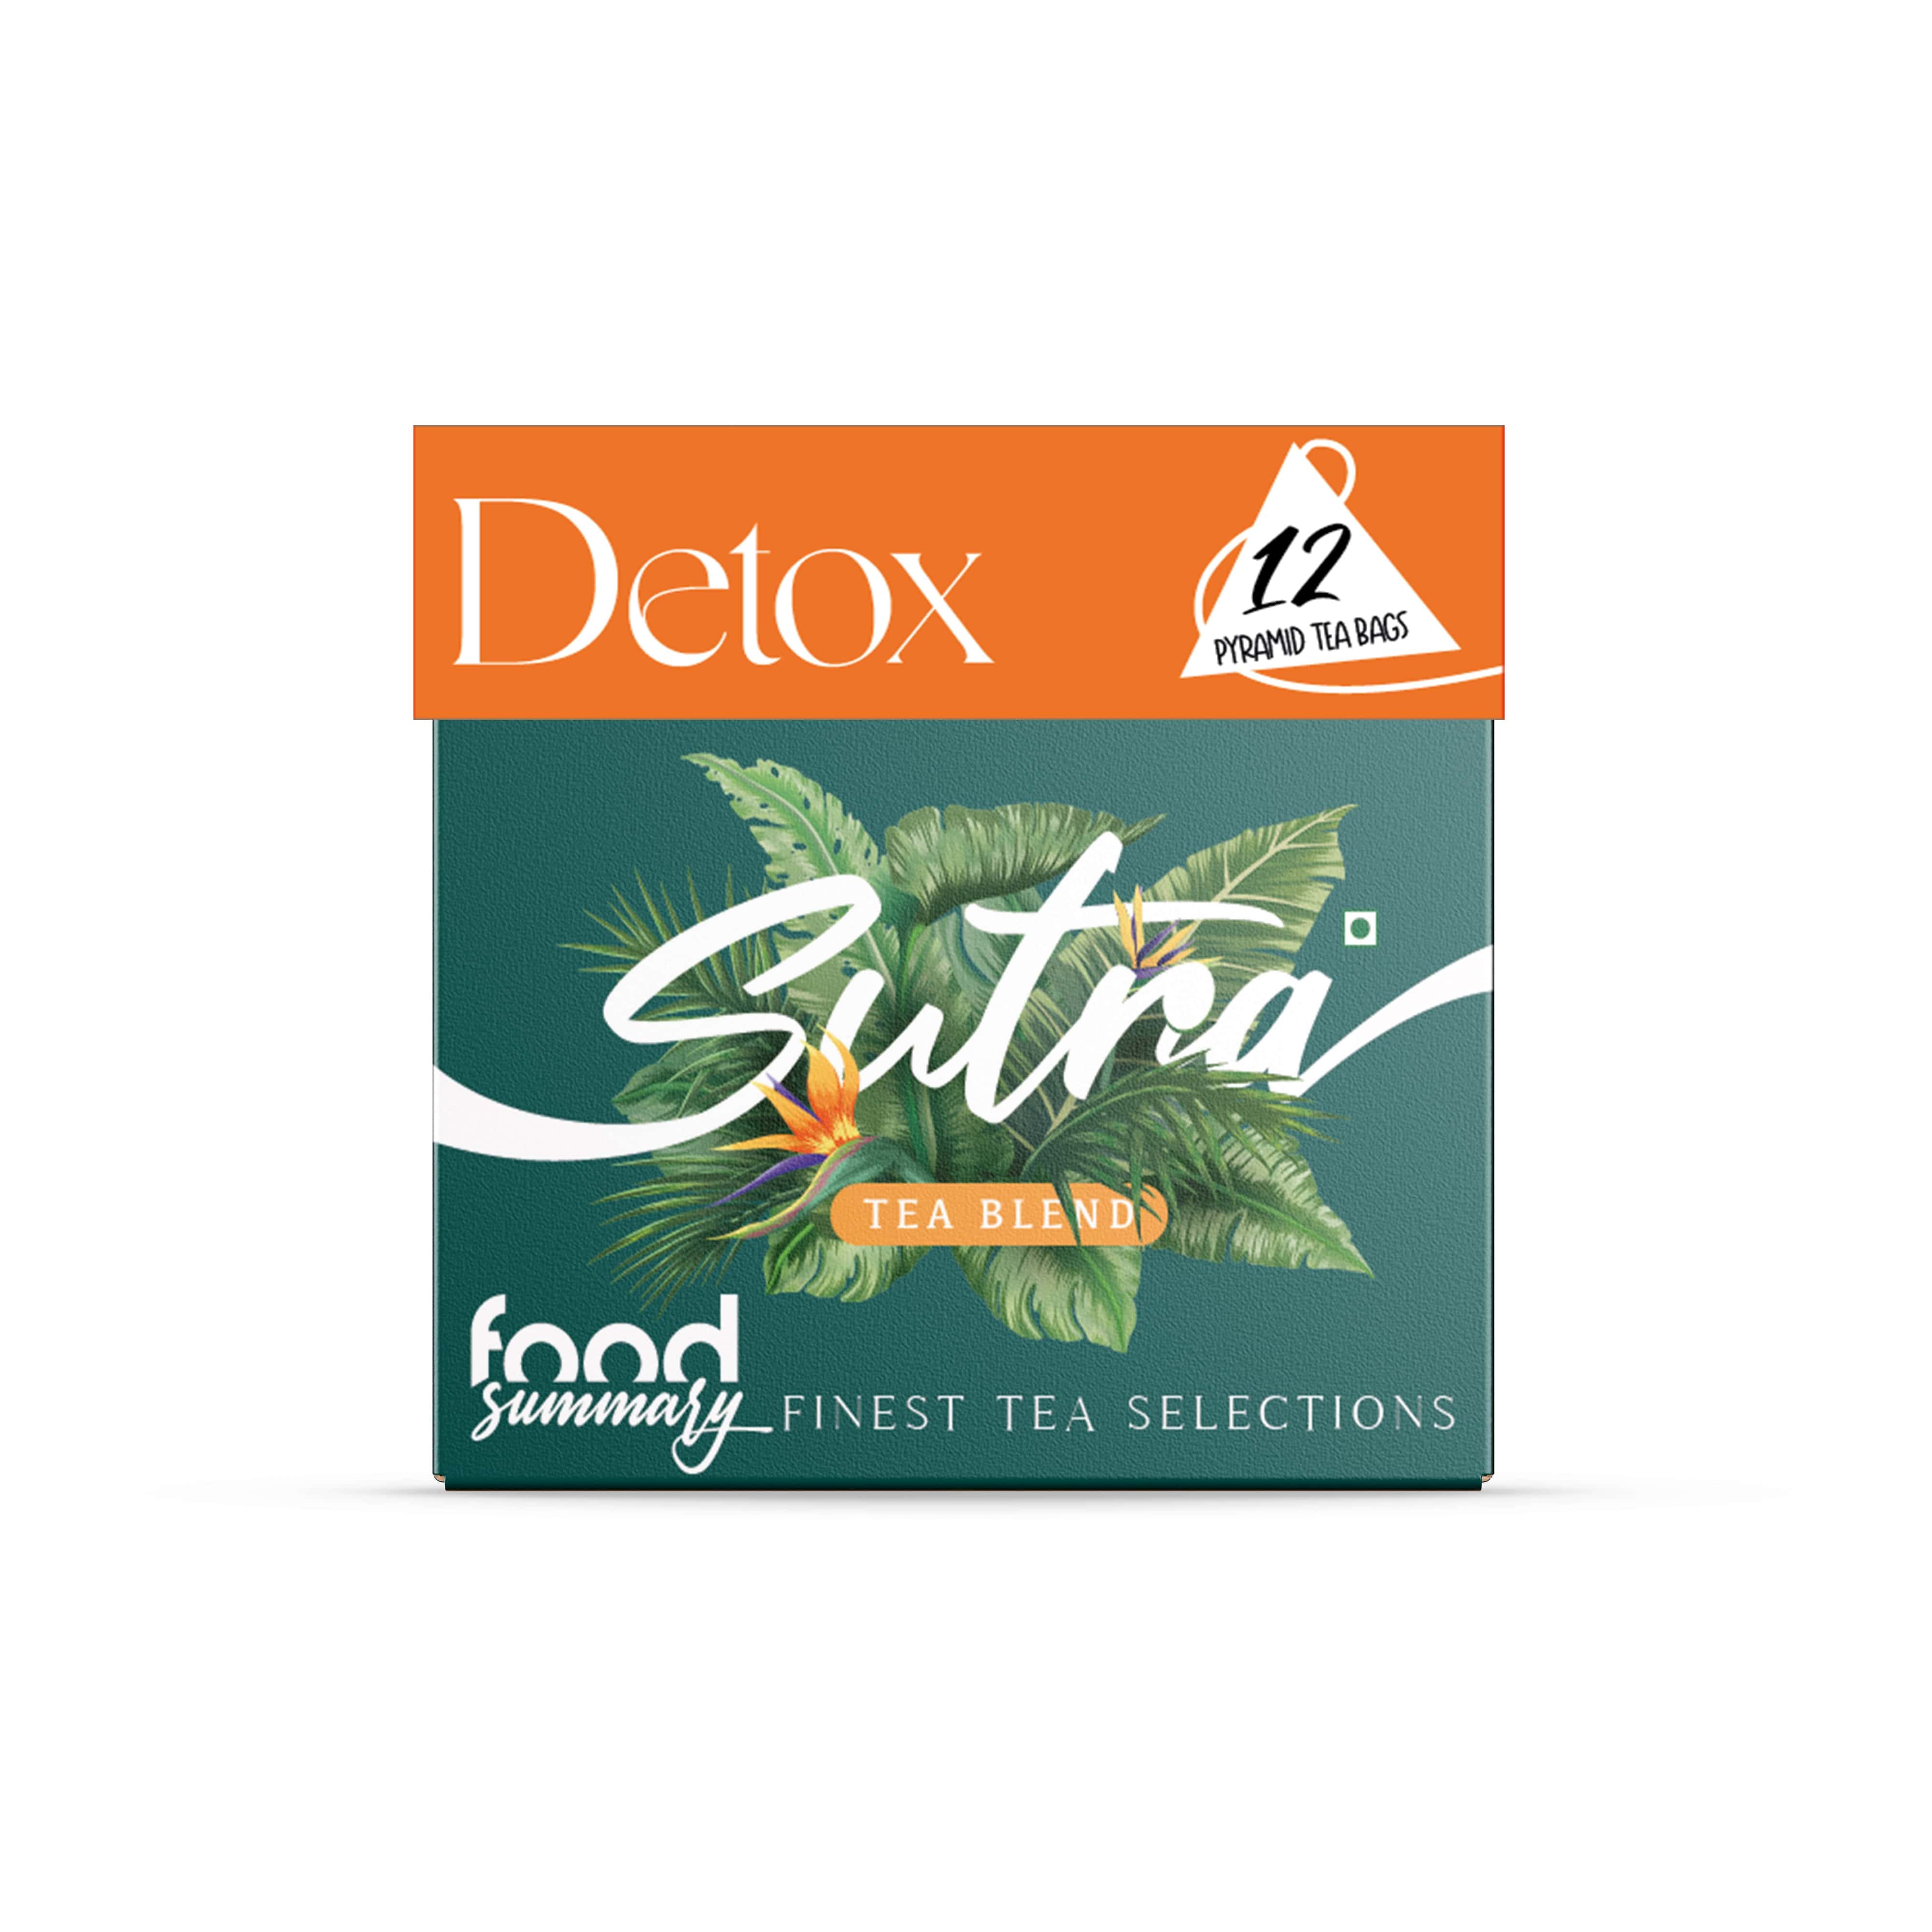 Food Summary Detox Sutra Pyramid Tea Box (12pc)